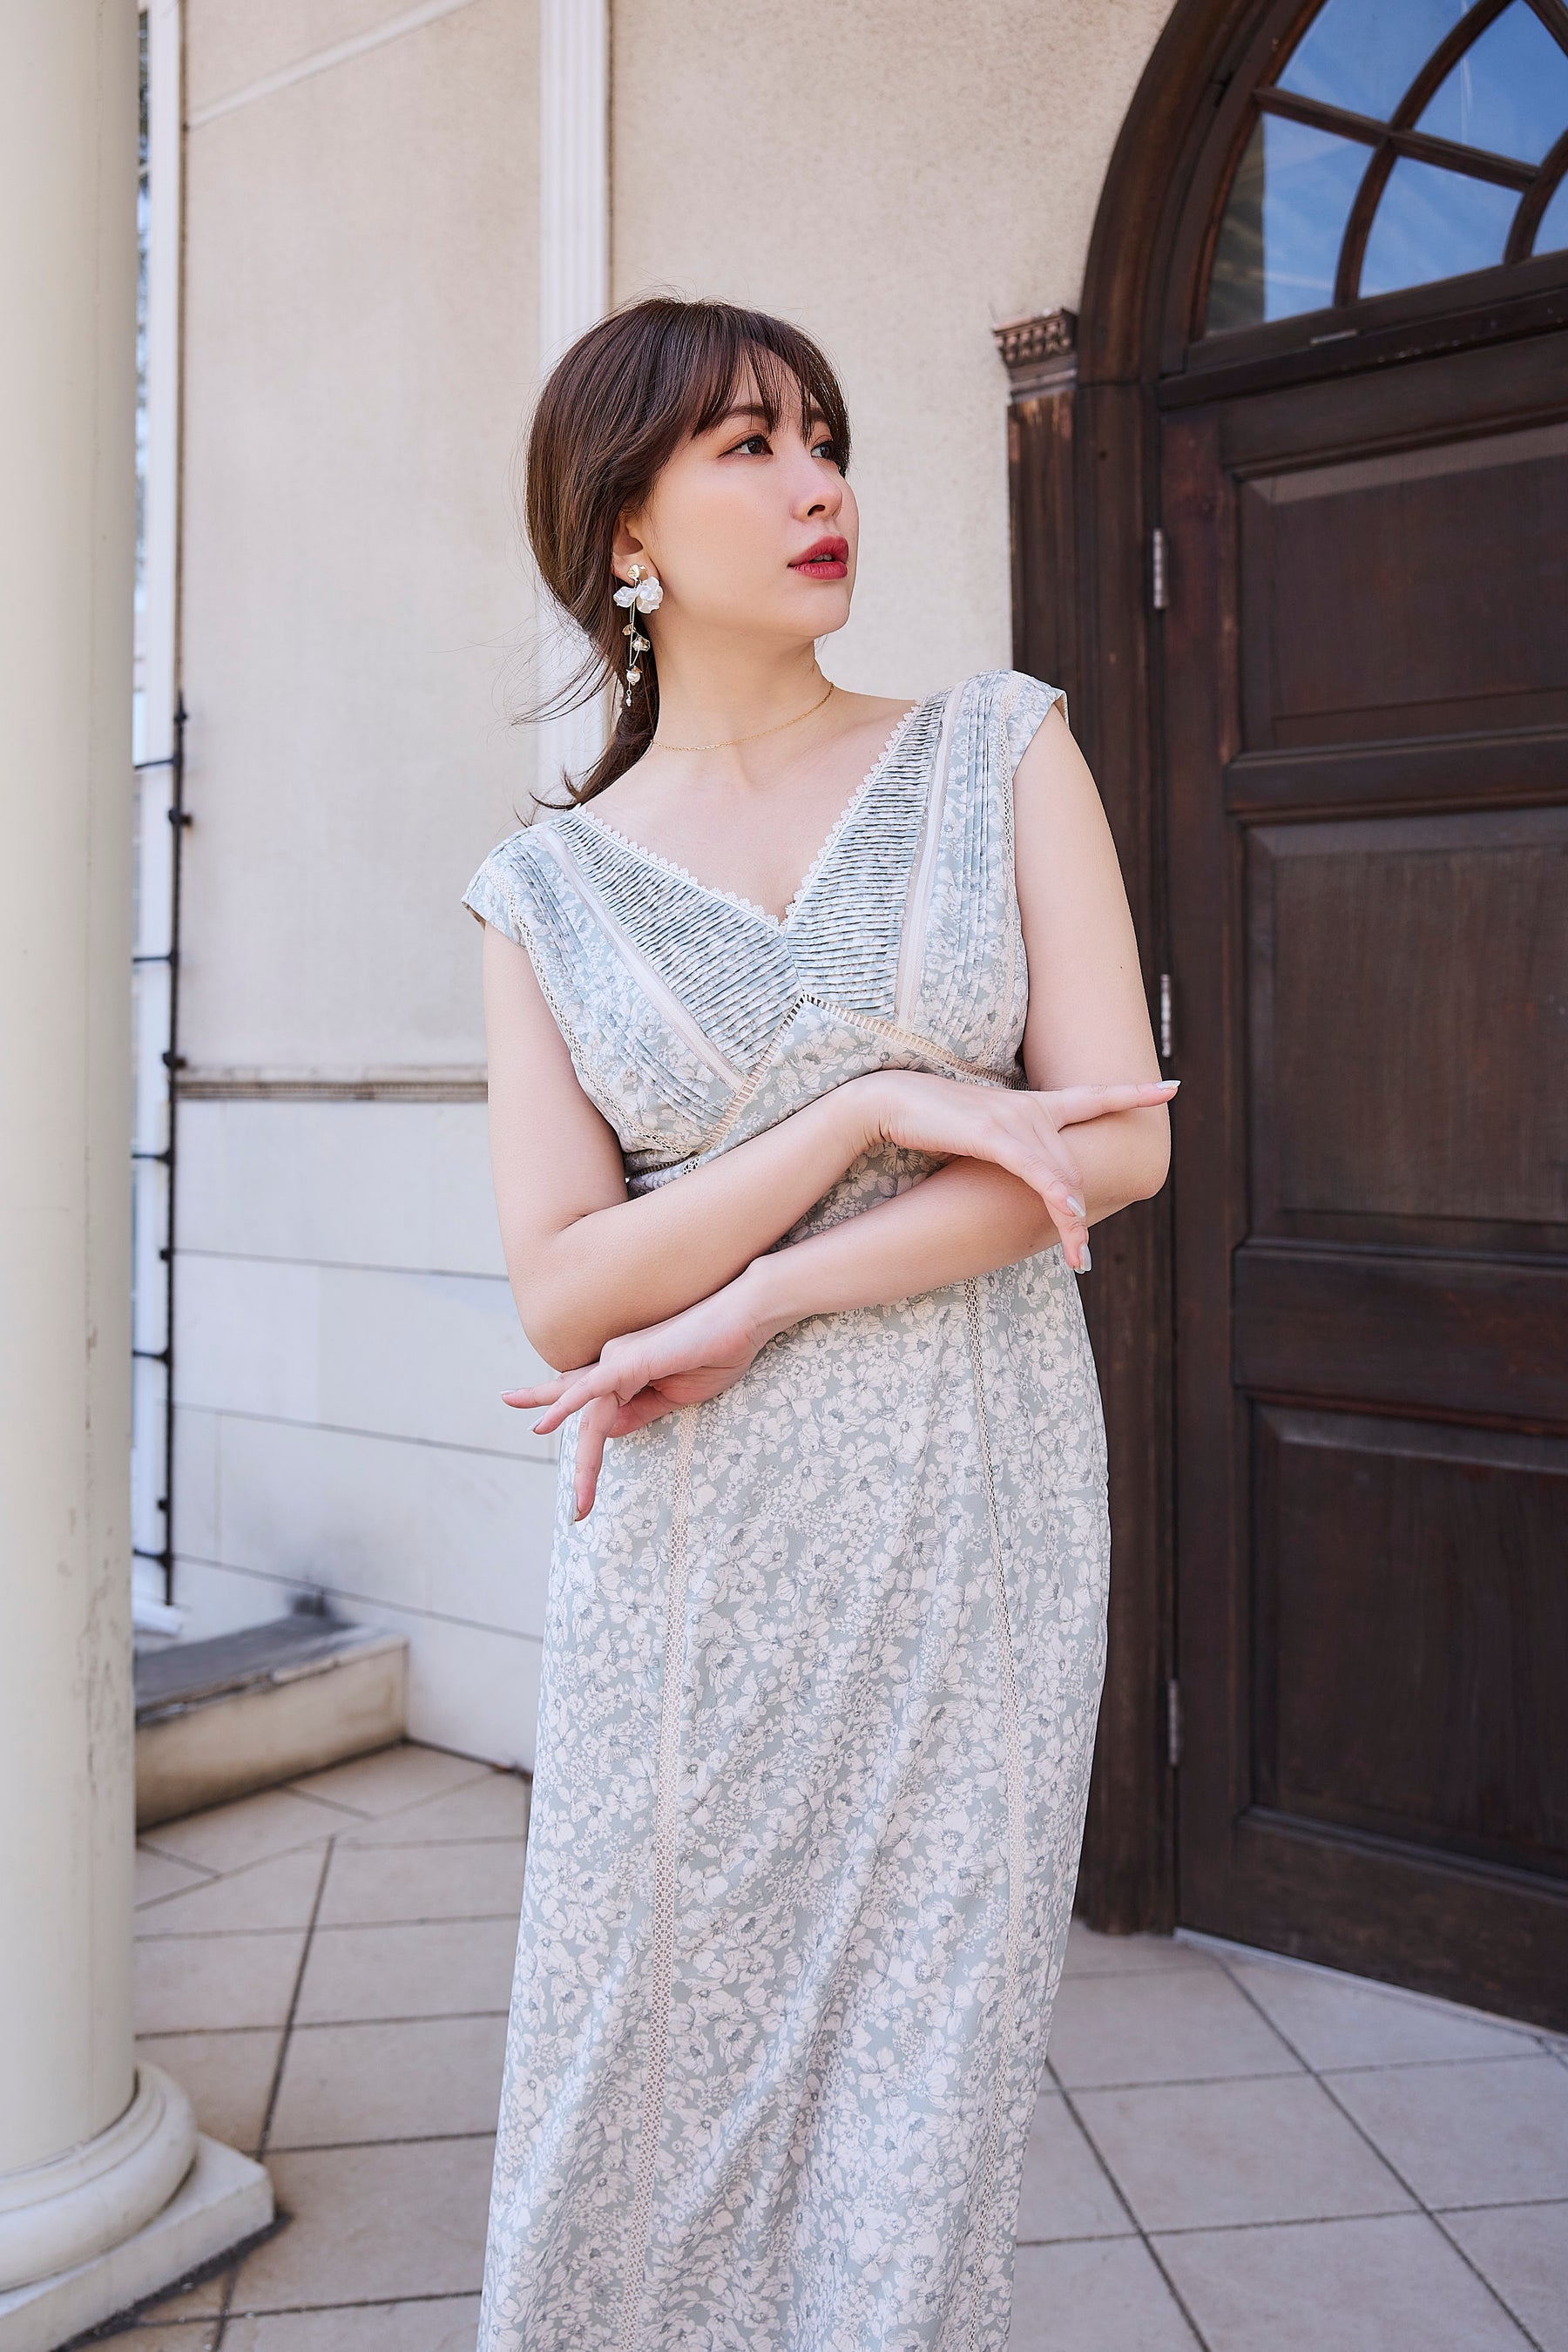 7,304円Herlipto Lace Trimmed Floral Dress